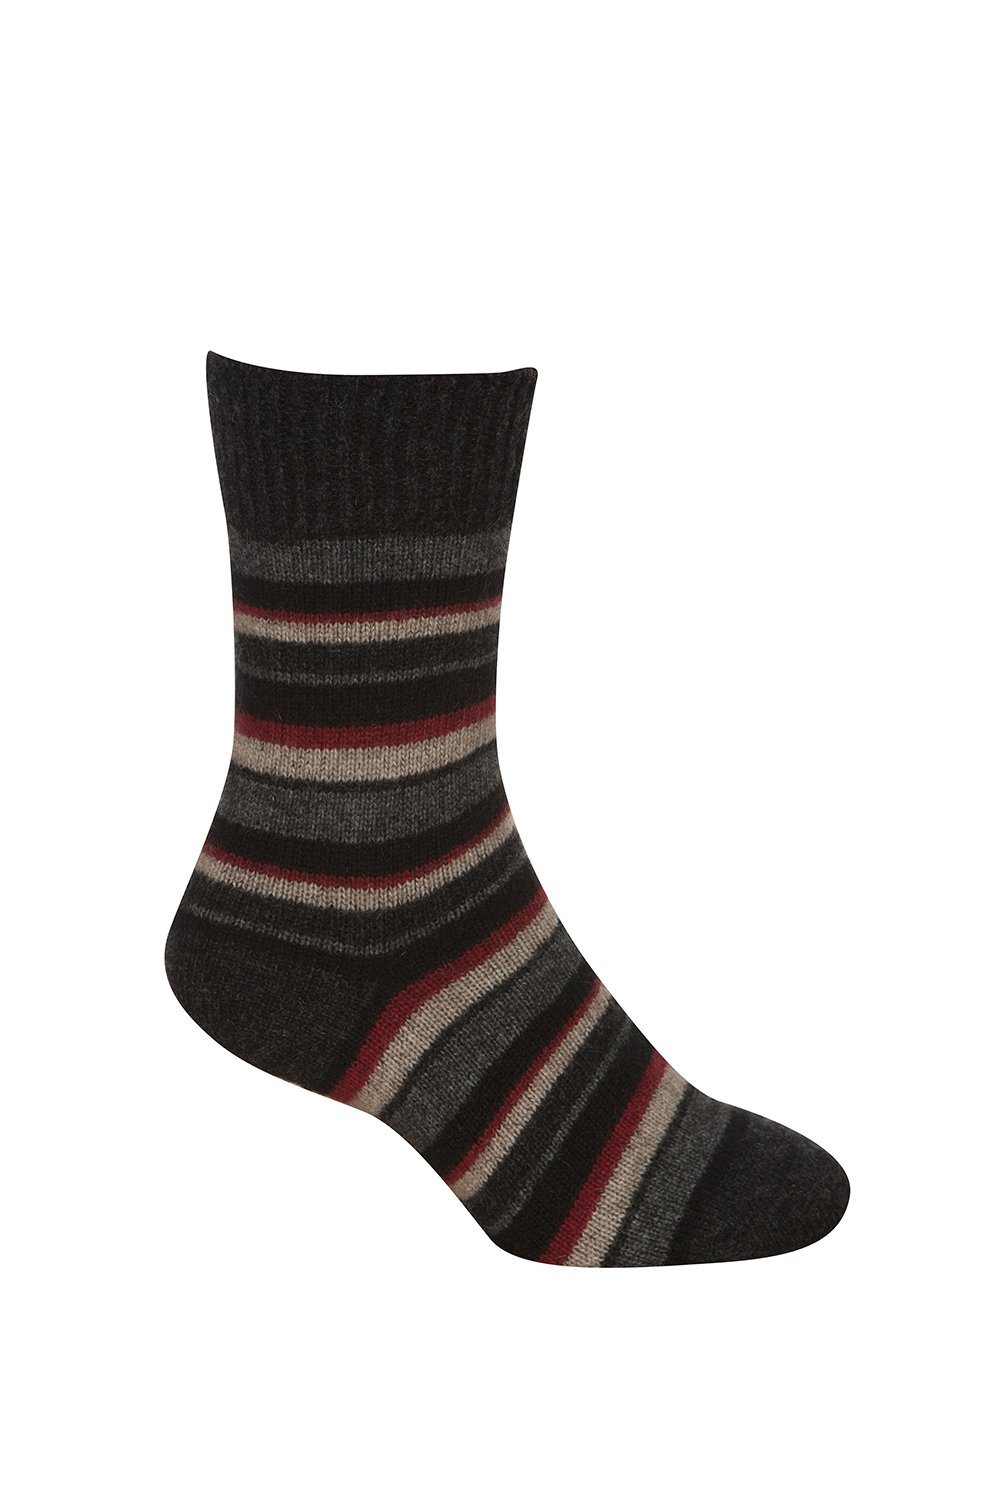 Striped Sock-Native World-The WoolPress Arrowtown